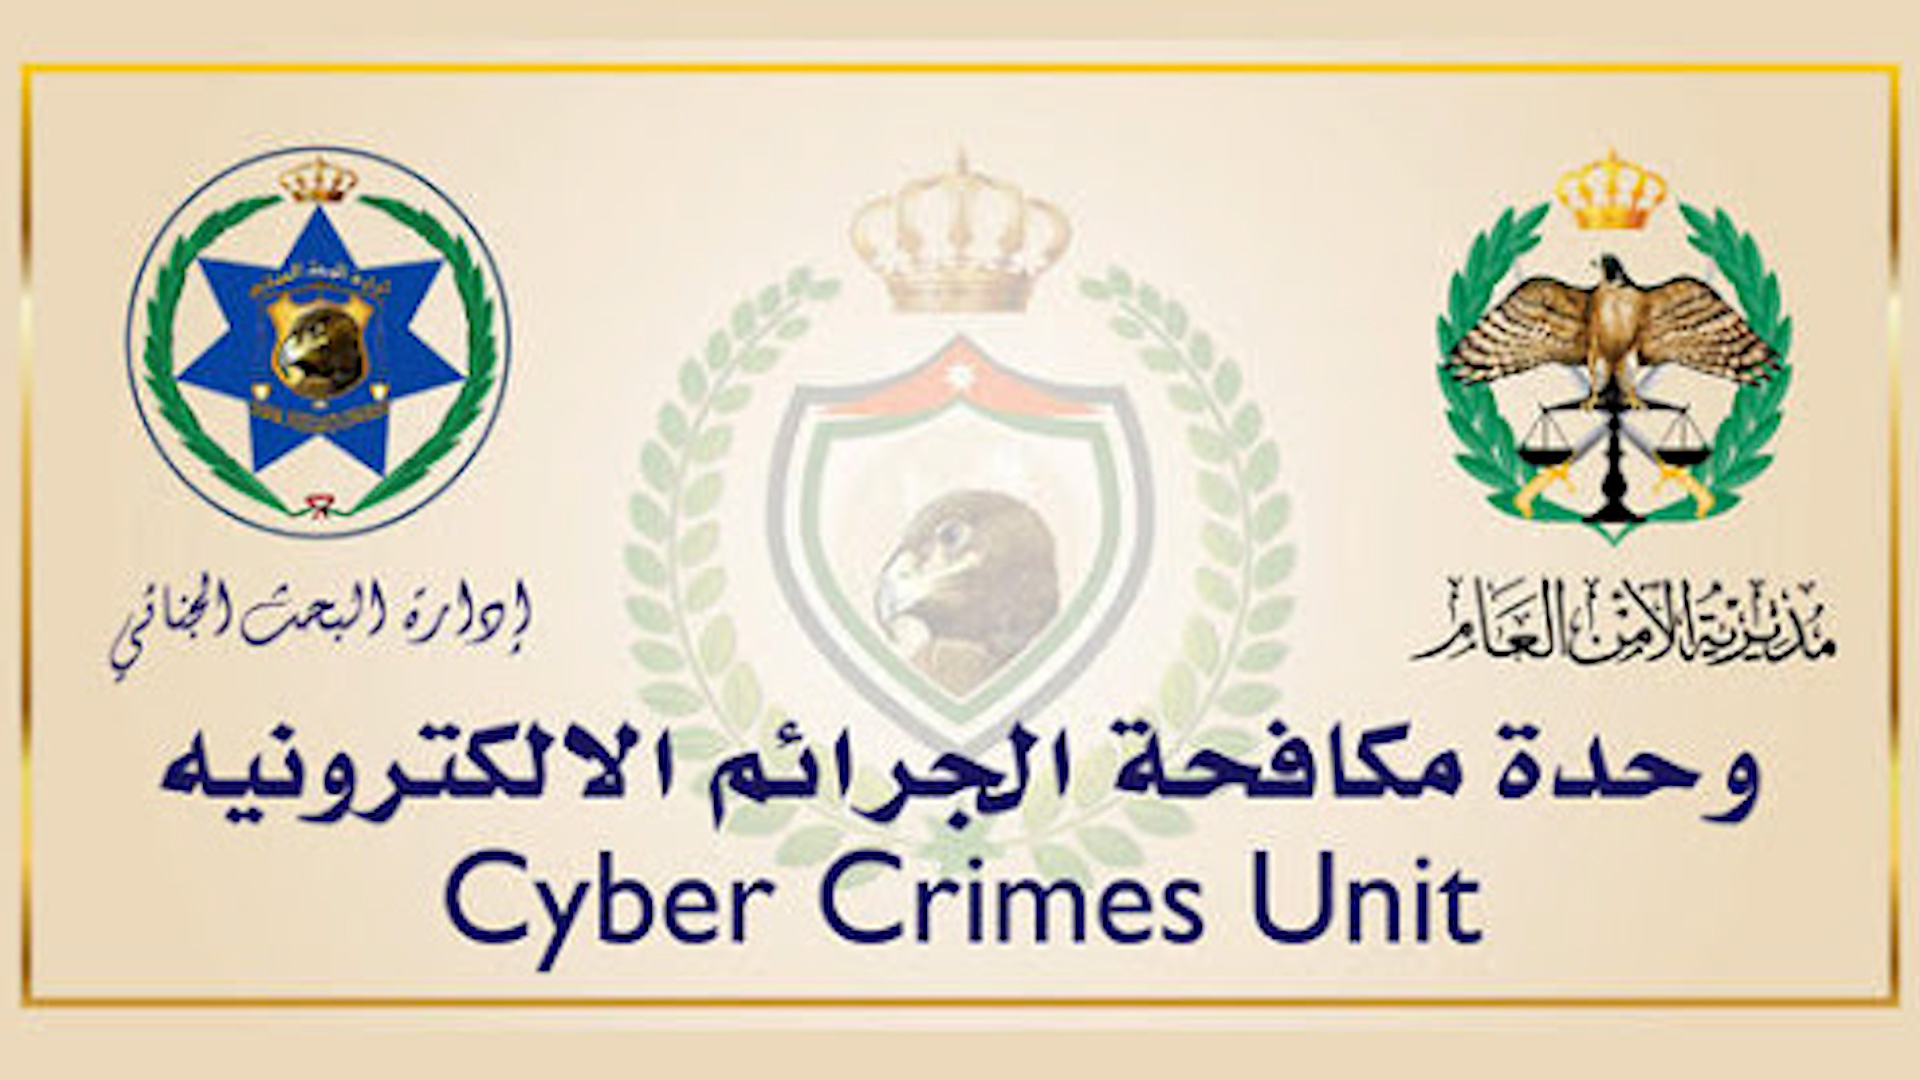 شعار وحدة مكافحة الجرائم الإلكترونية في الأردن.  Logo - Jordanian Cyber Crimes Unit - Source petra.gov.jo